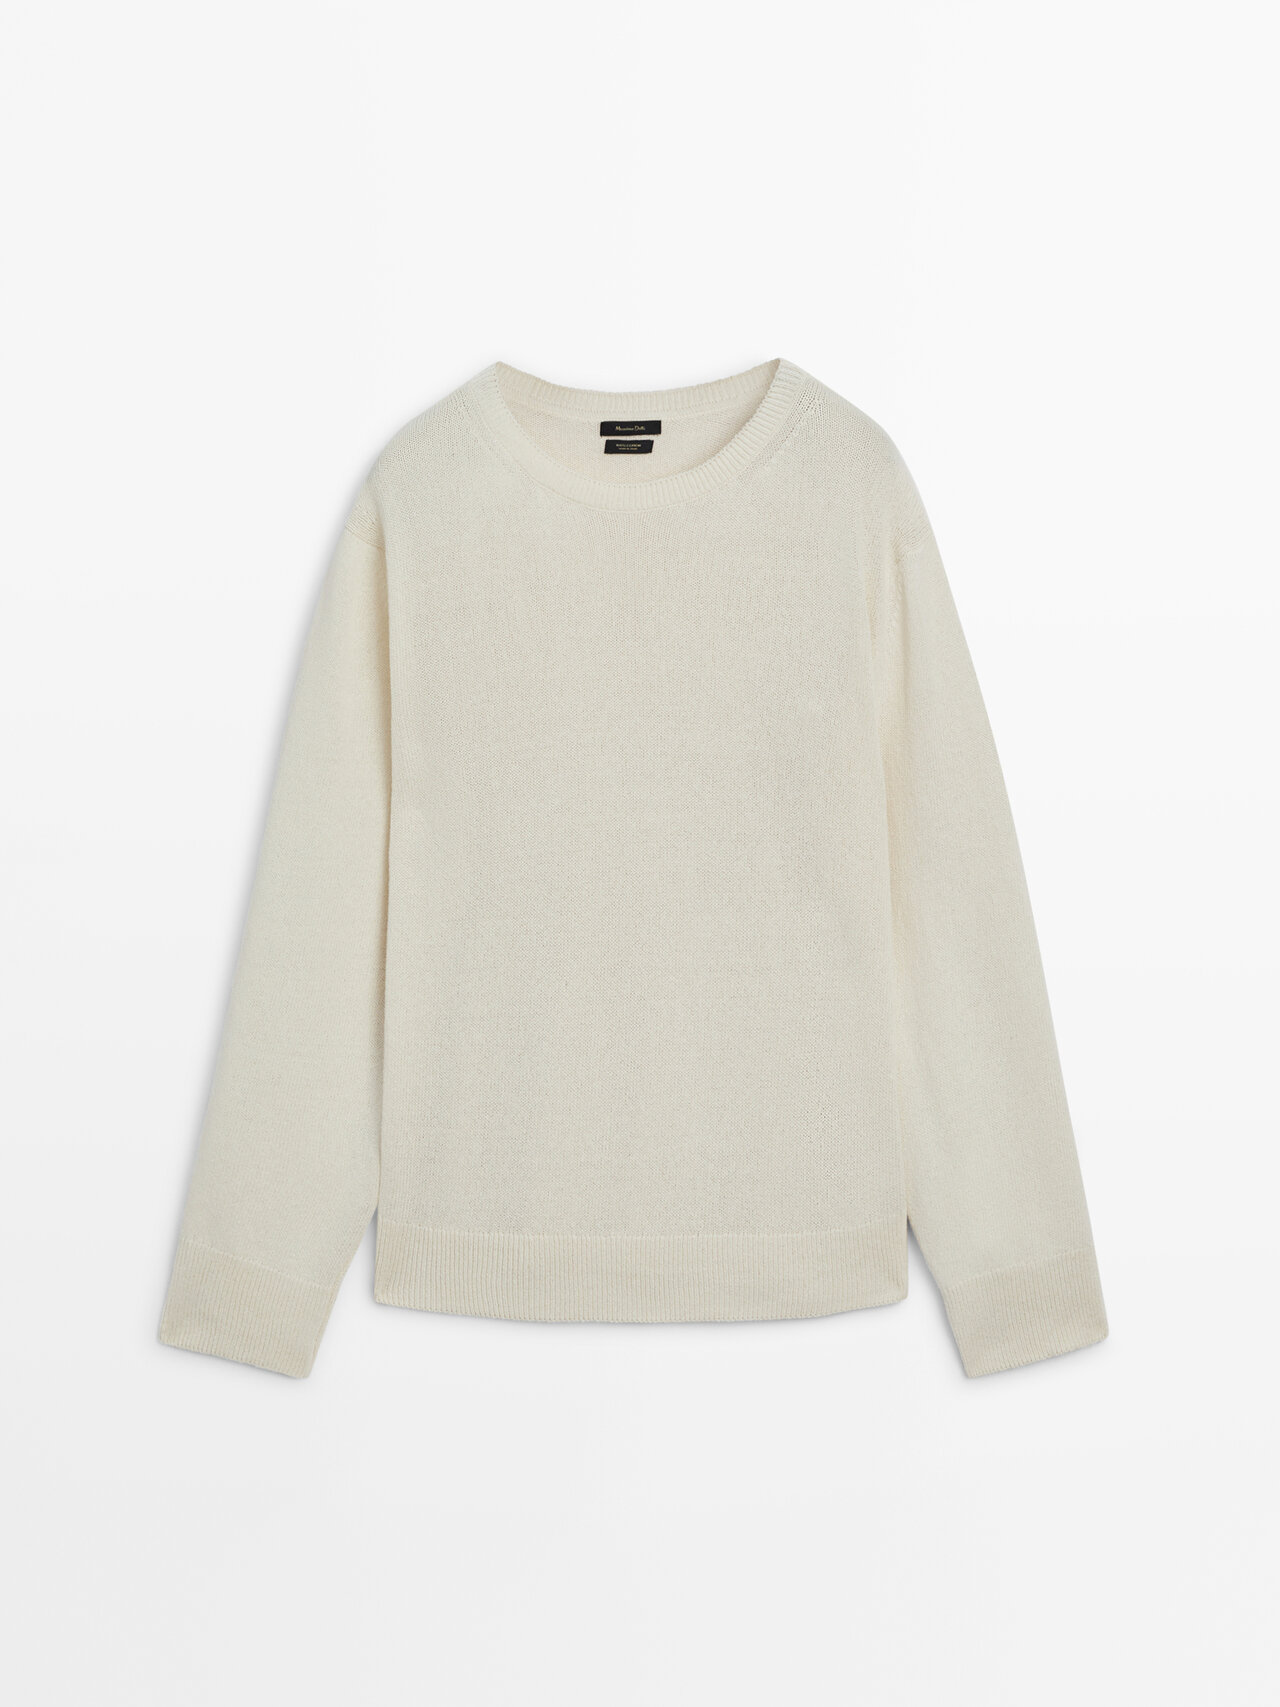 Massimo Dutti 100% Cotton Crew Neck Sweater In Cream